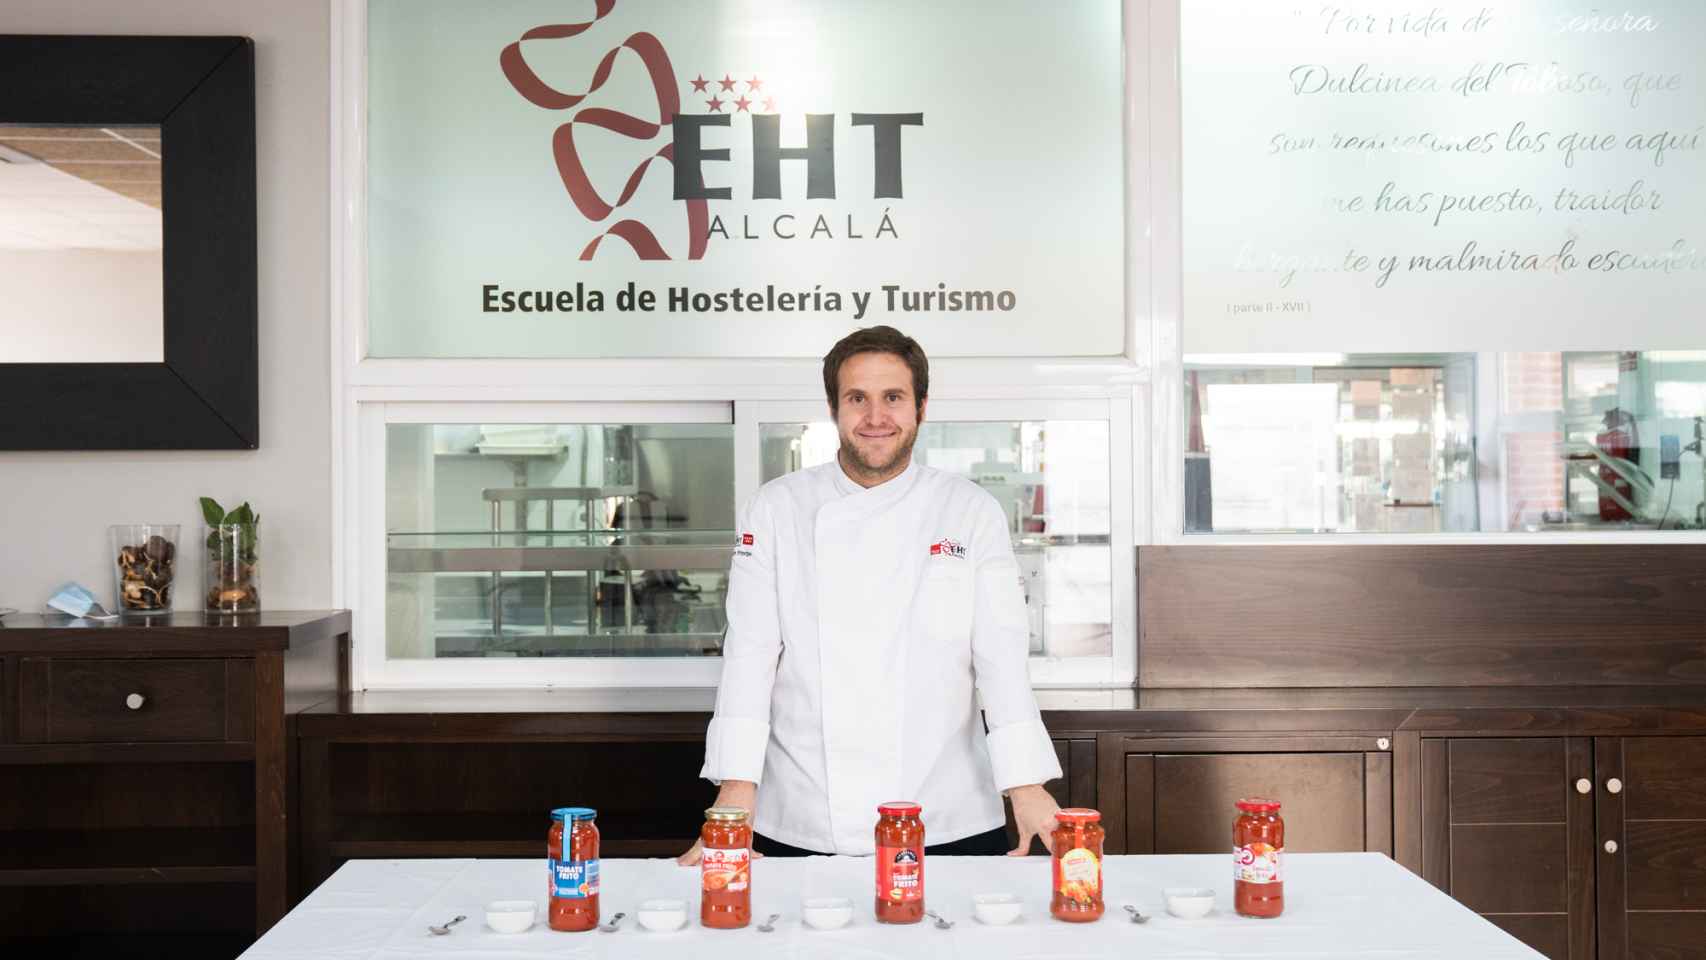 Los cinco tomates fritos probados por Rubén Príncipe, profesor de la Escuela de Hostelería y Turismo de Alcalá de Henares.